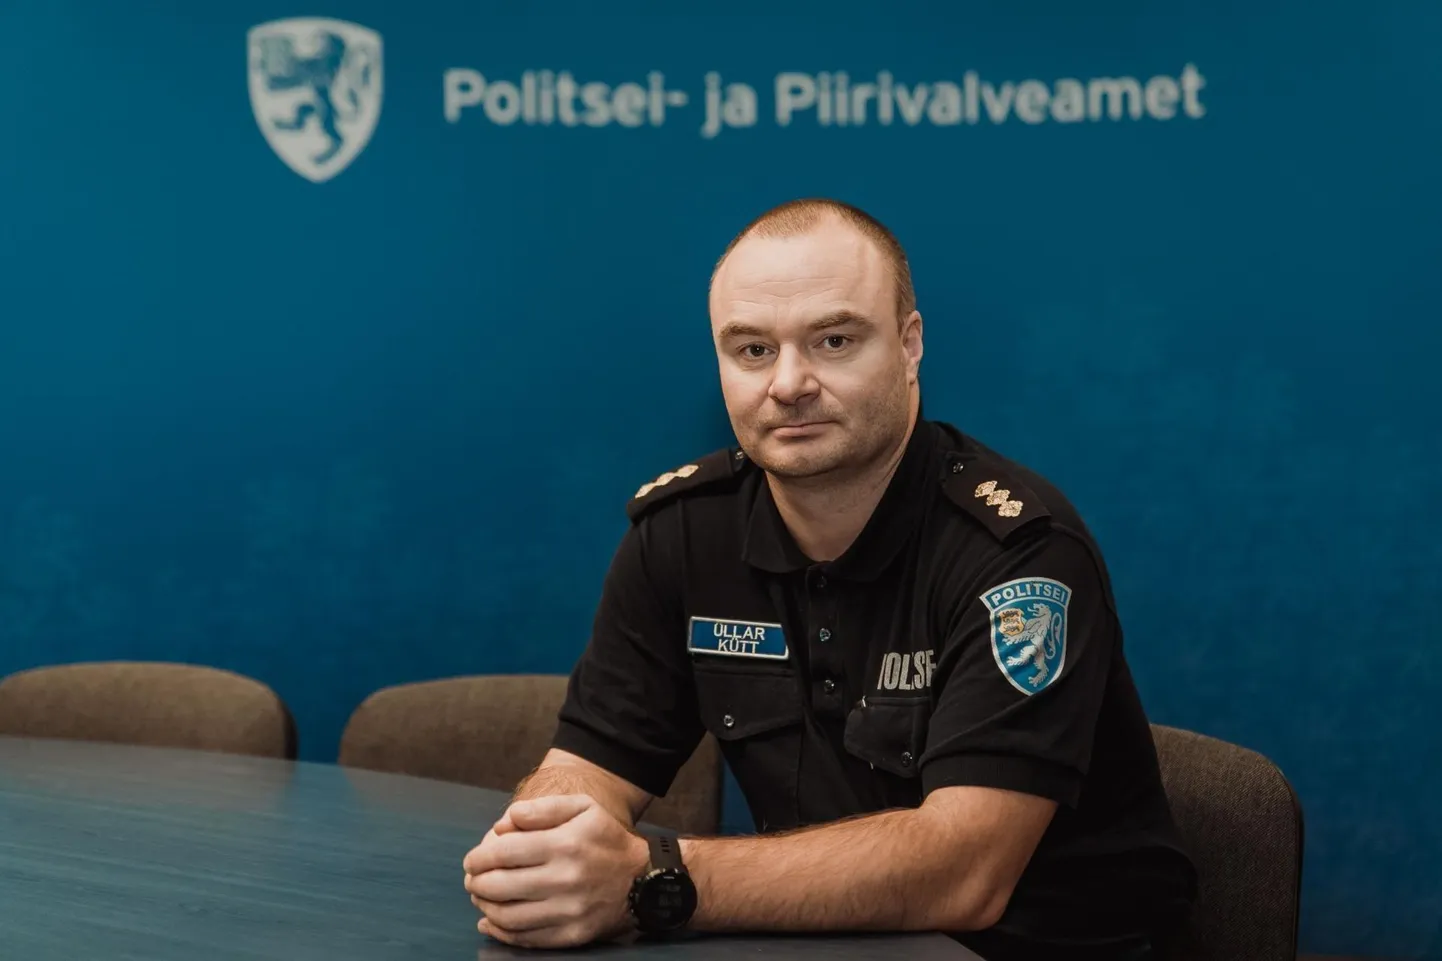 Pärnu politseijaoskonna juht Üllar Kütt tõdes, et siin kandis on jätkuvalt suur probleem narkootikumide kerge kättesaadavus.